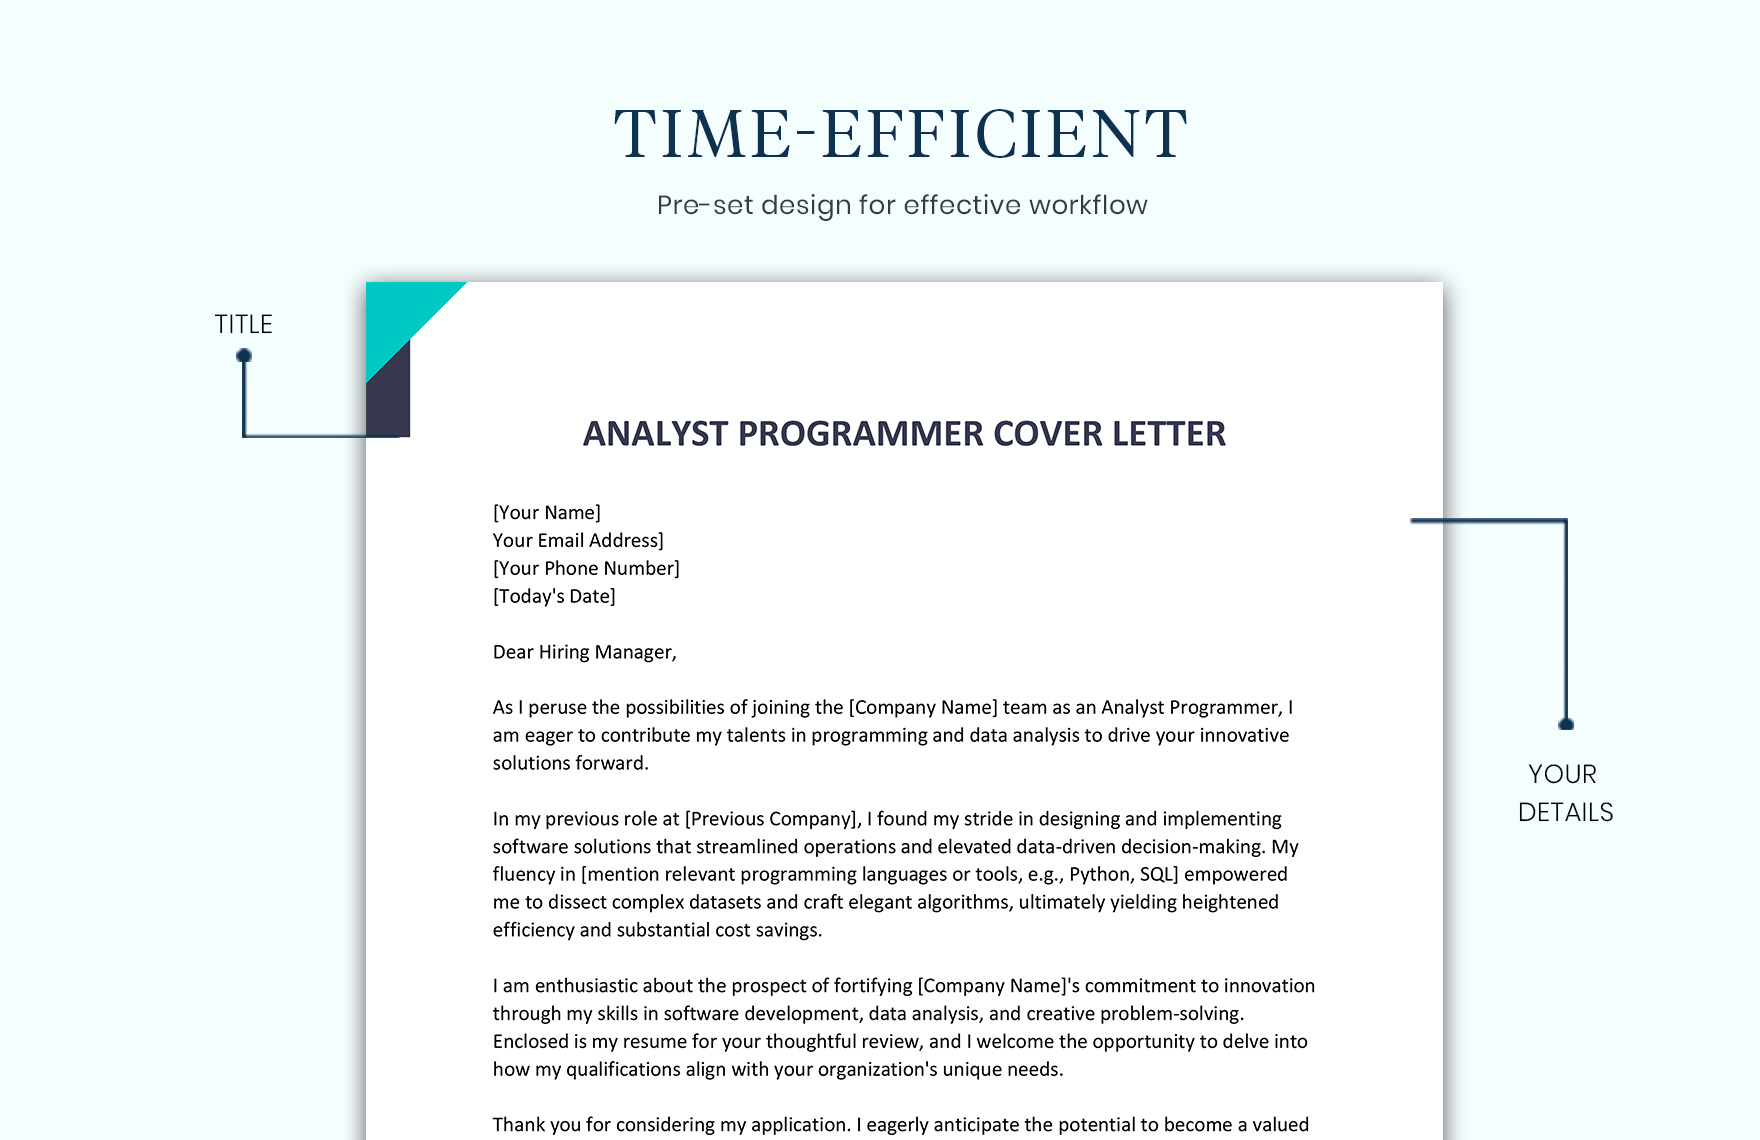 Analyst Programmer Cover Letter